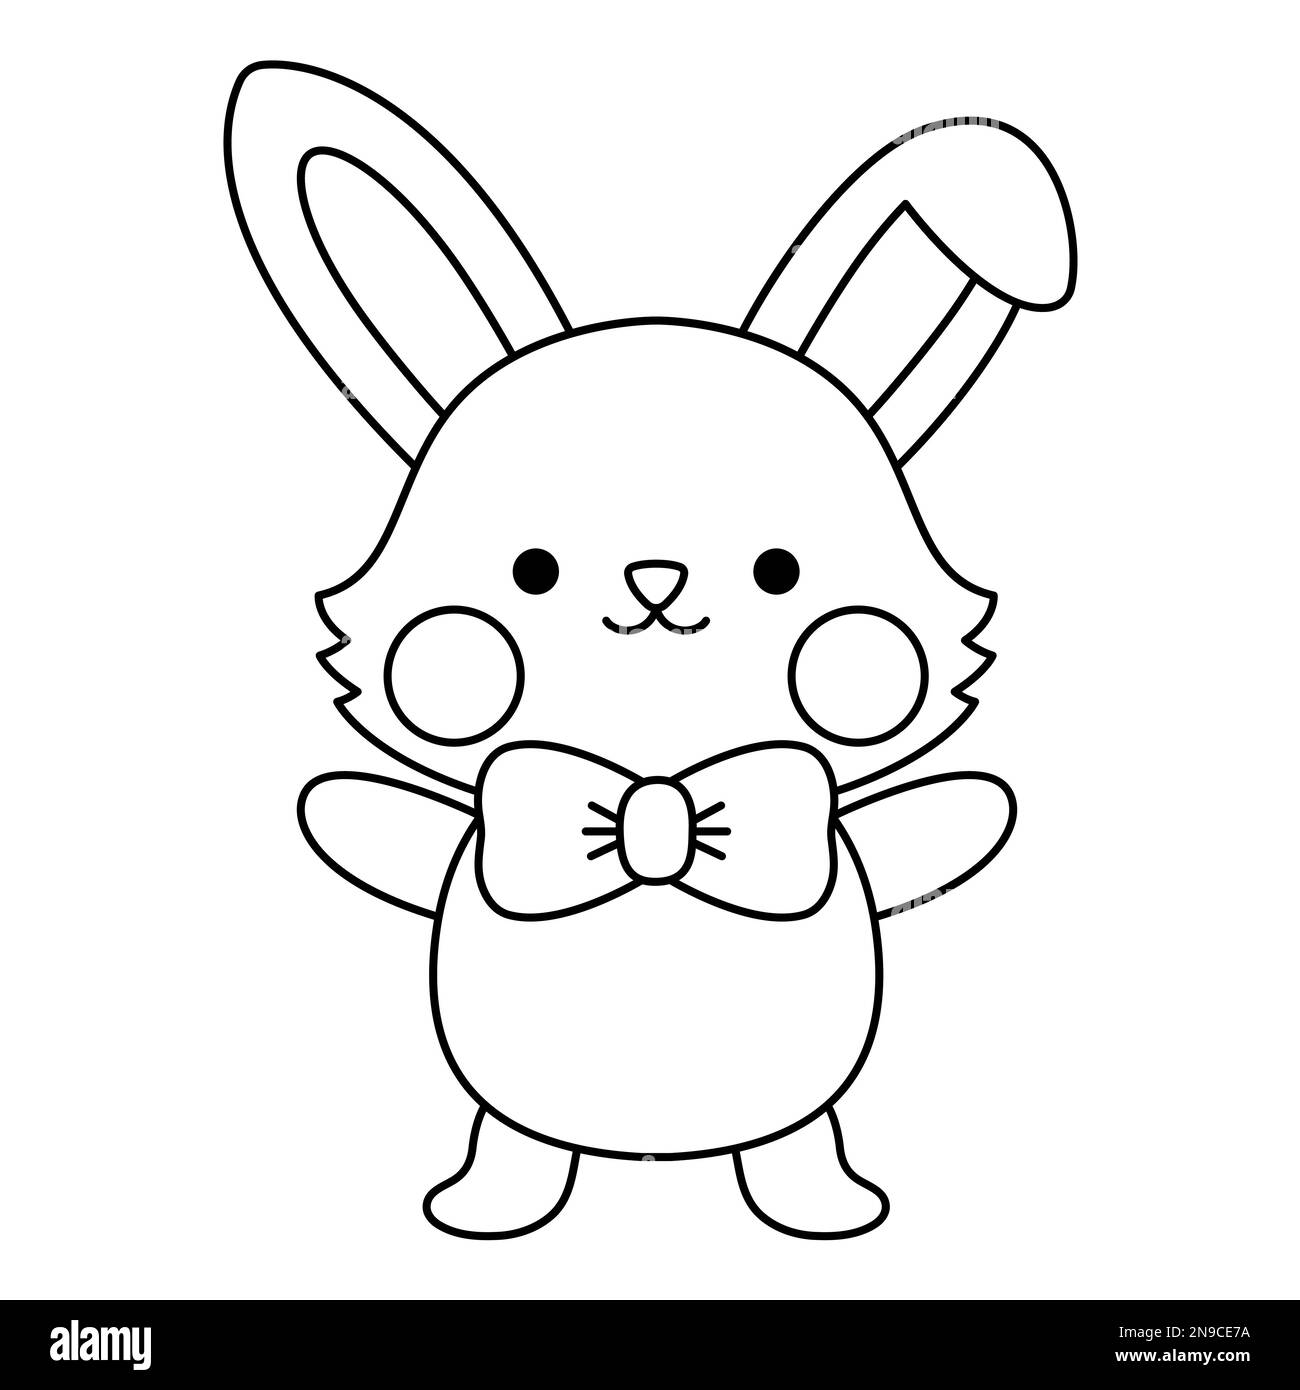 Vector schwarz-weiße Osterhase-Ikone für Kinder. Niedliche Kawaii-Linie Kaninchen-Illustration oder Malseite. Komischer Cartoon-Hasen-Charakter. Traditionelles sp Stock Vektor